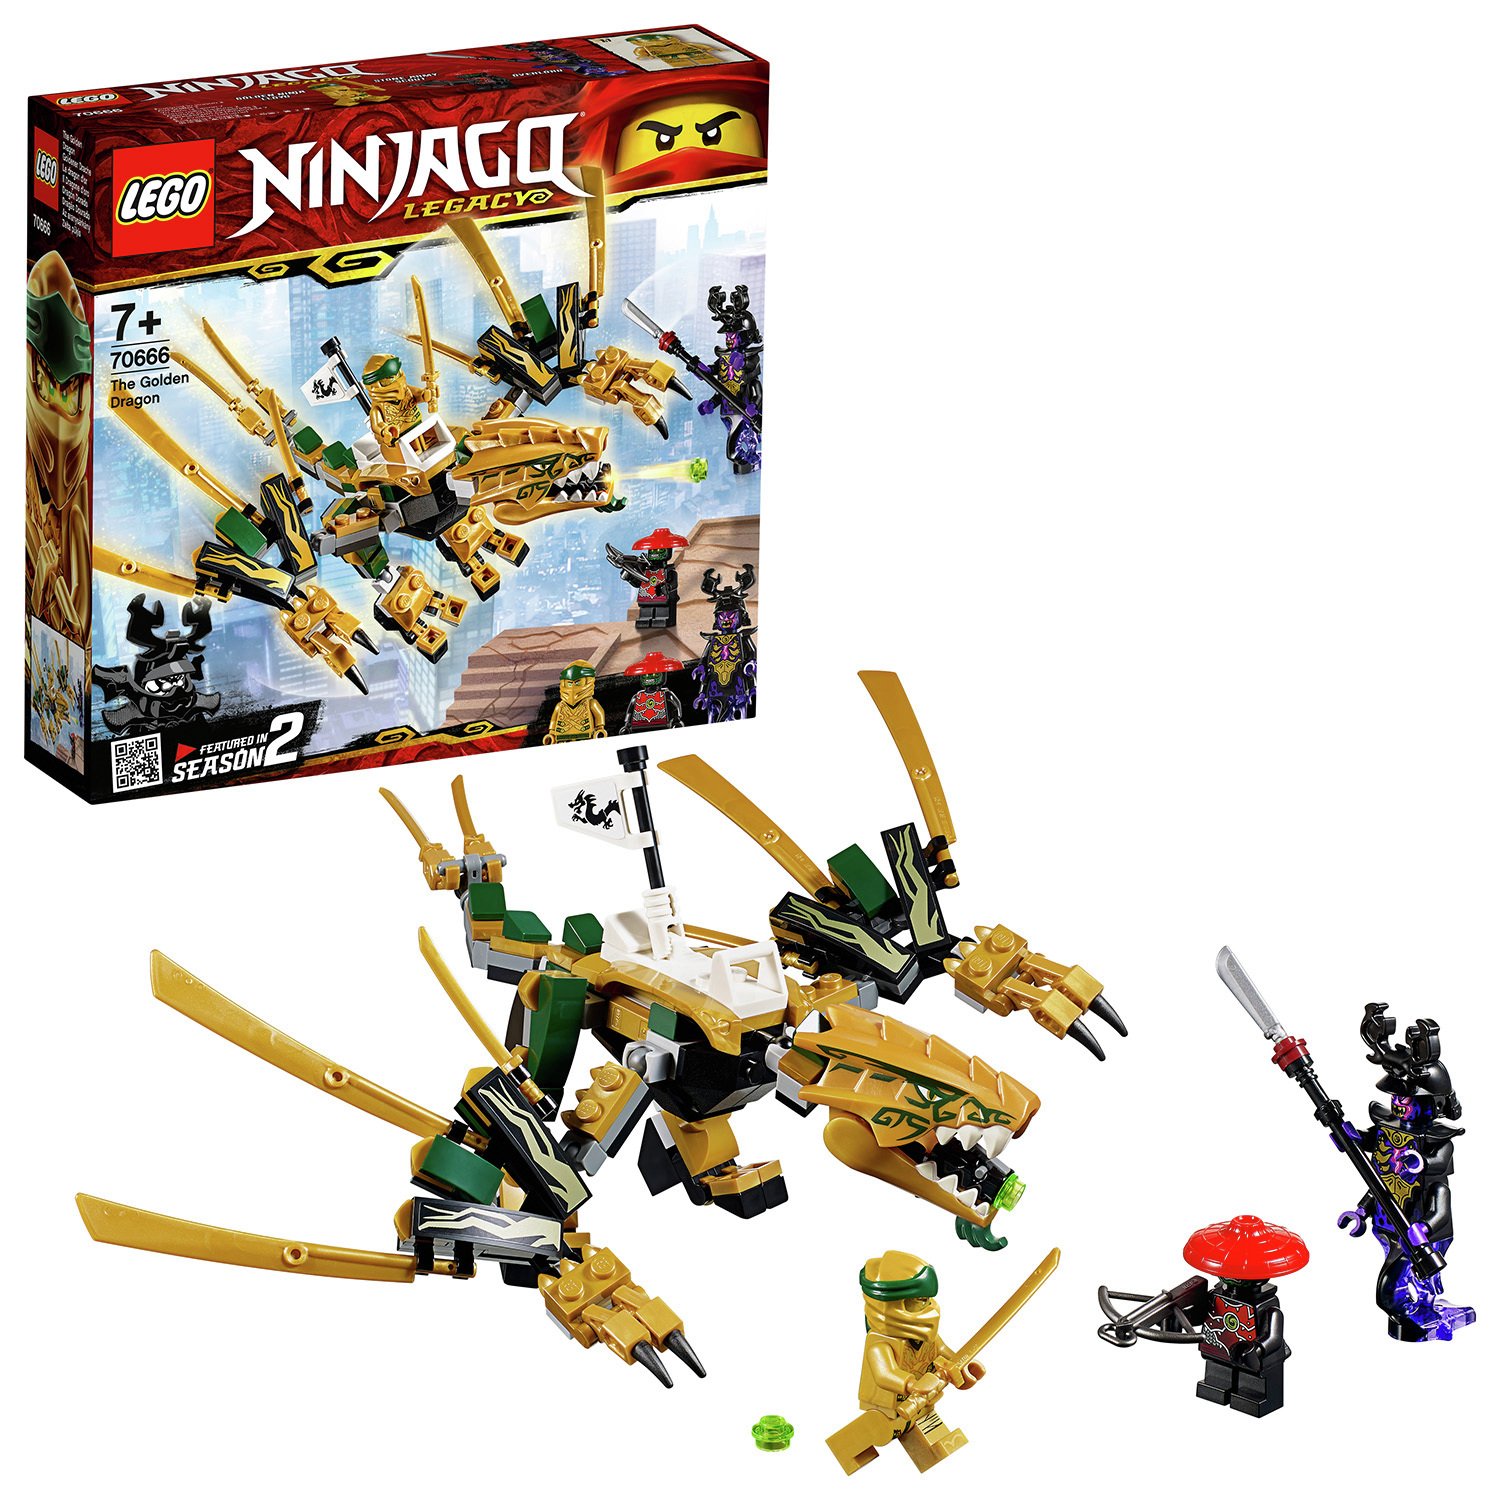 LEGO NINJAGO The Golden Dragon Action Figure - 70666